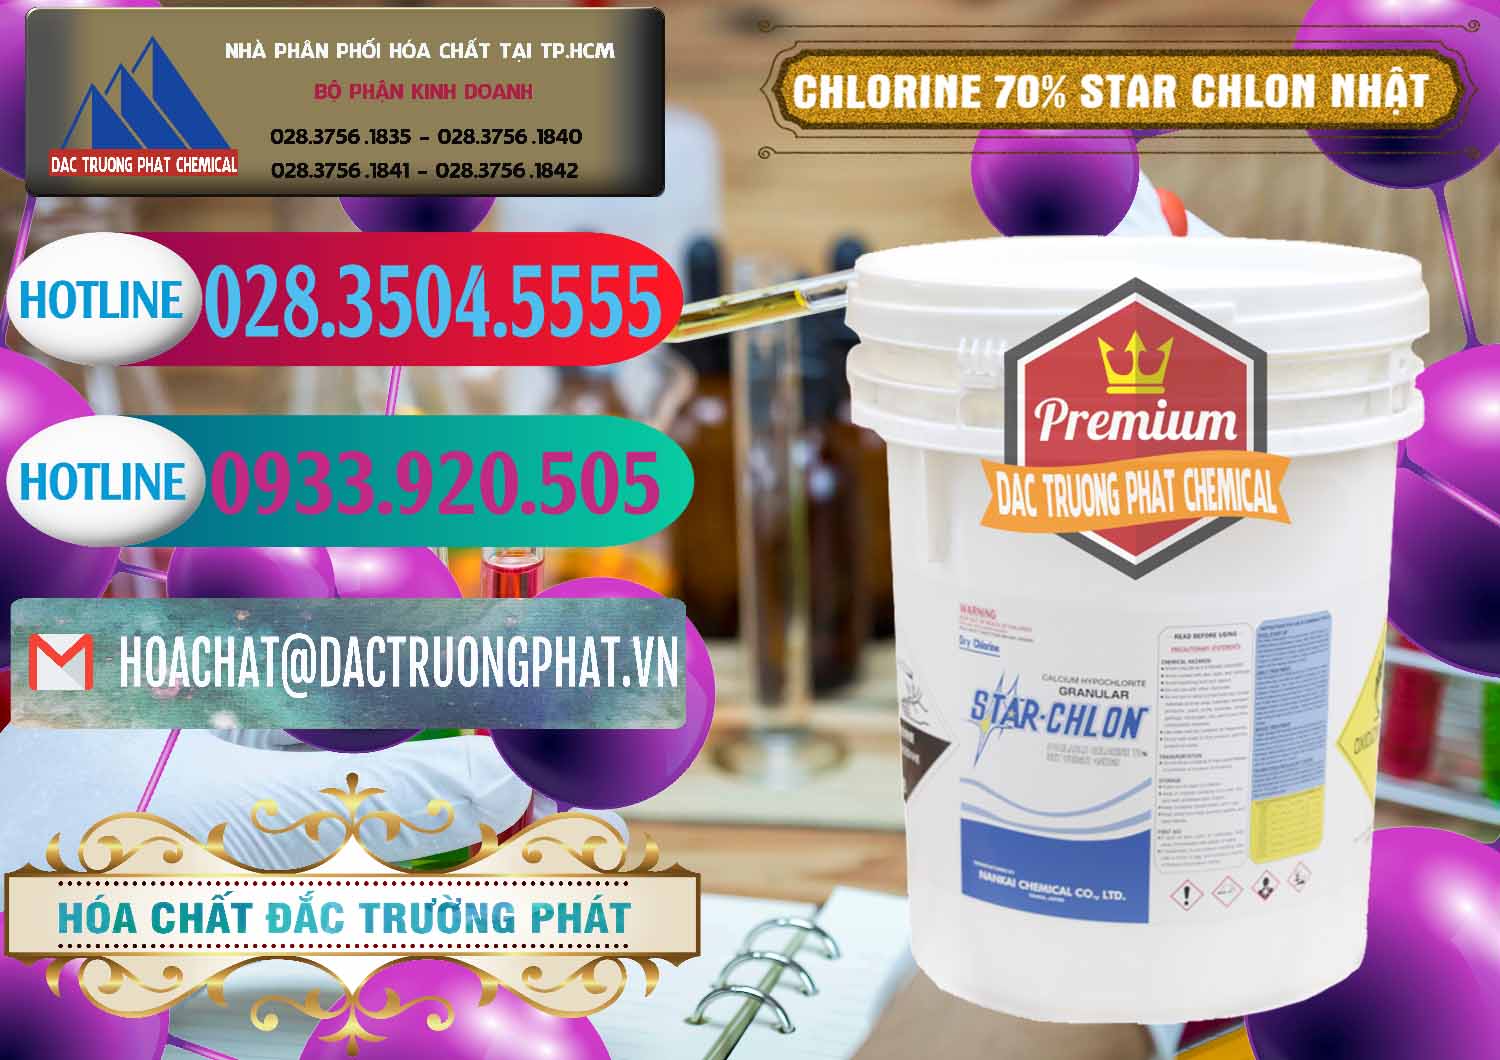 Công ty bán và cung ứng Clorin – Chlorine 70% Star Chlon Nhật Bản Japan - 0243 - Cty chuyên cung cấp _ bán hóa chất tại TP.HCM - truongphat.vn